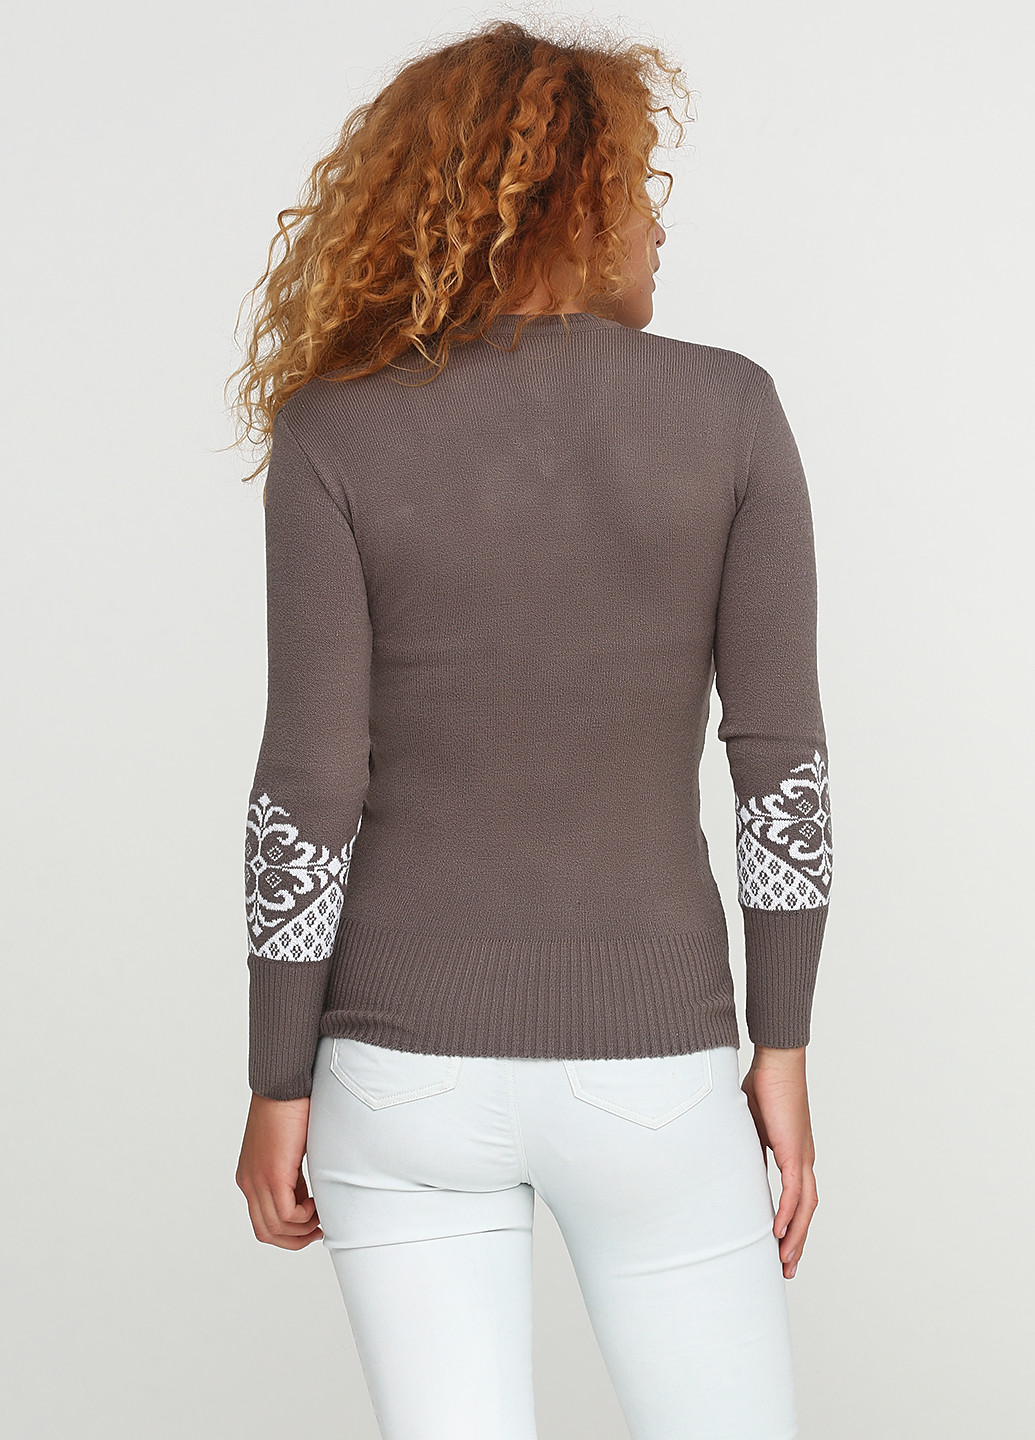 Светло-коричневый демисезонный пуловер пуловер ZEHRA